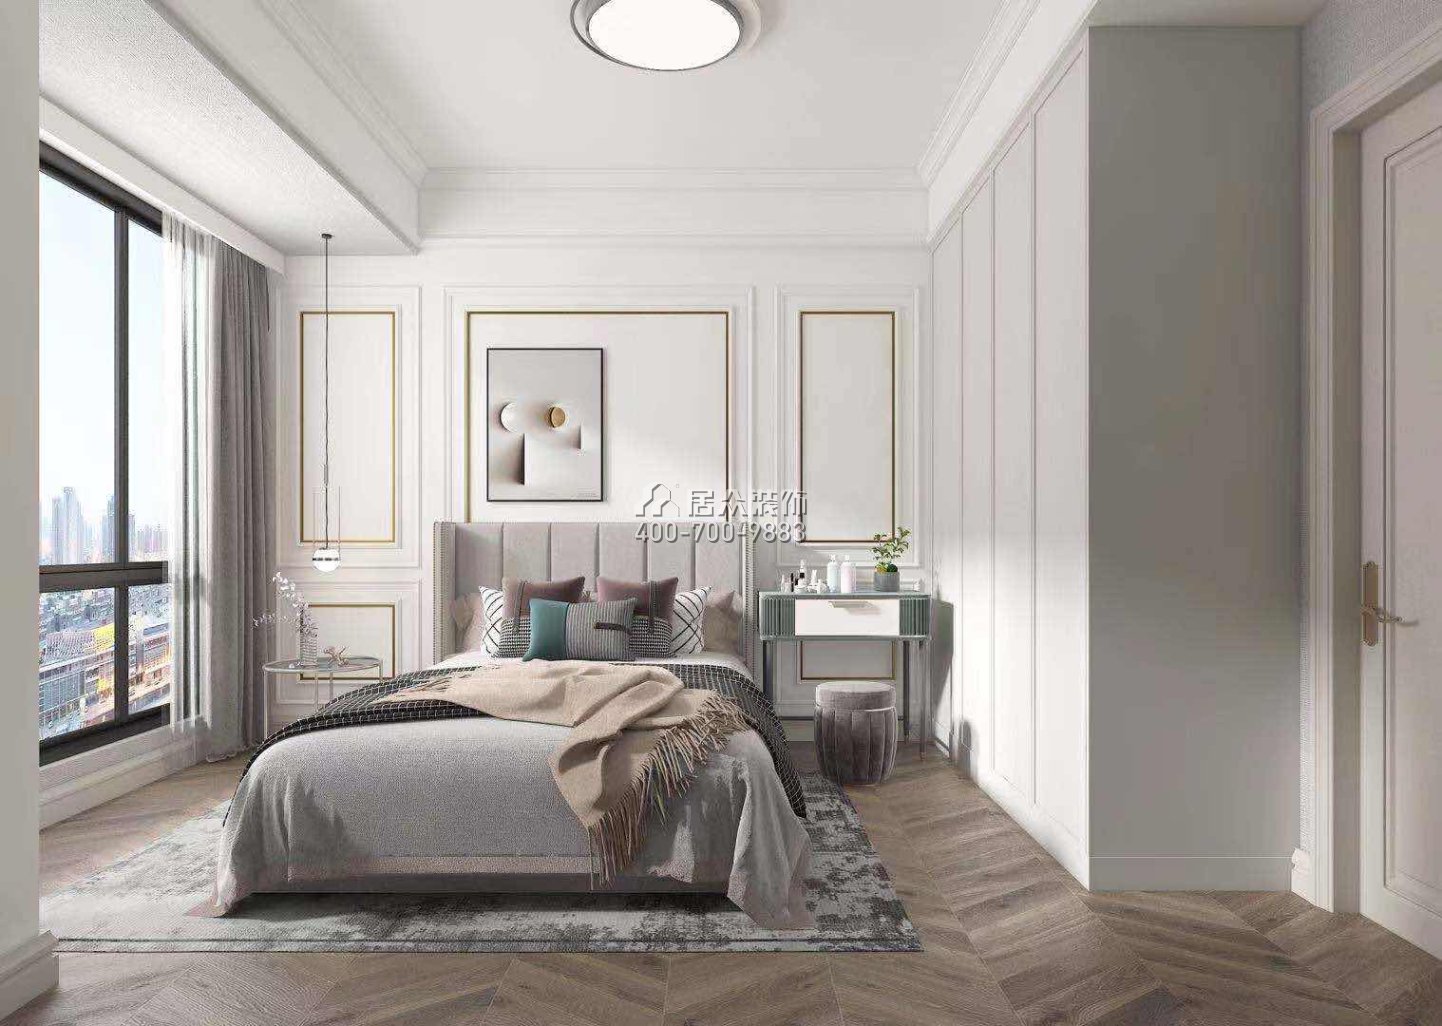 卓能雅苑126平方米欧式风格平层户型卧室装修效果图